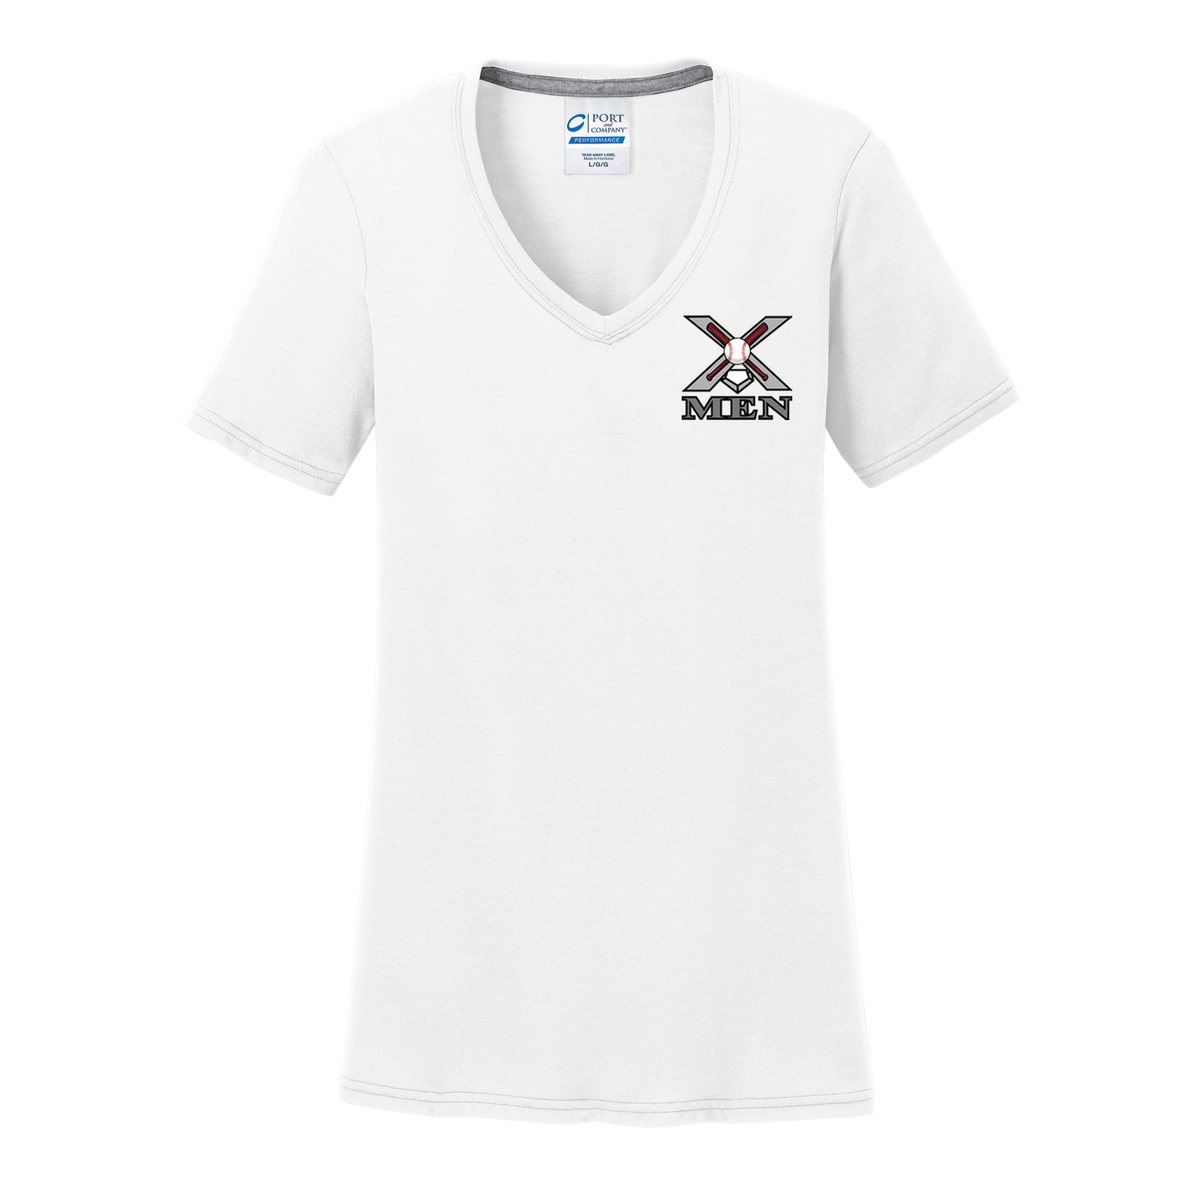 X Men Baseball Women's T-Shirt